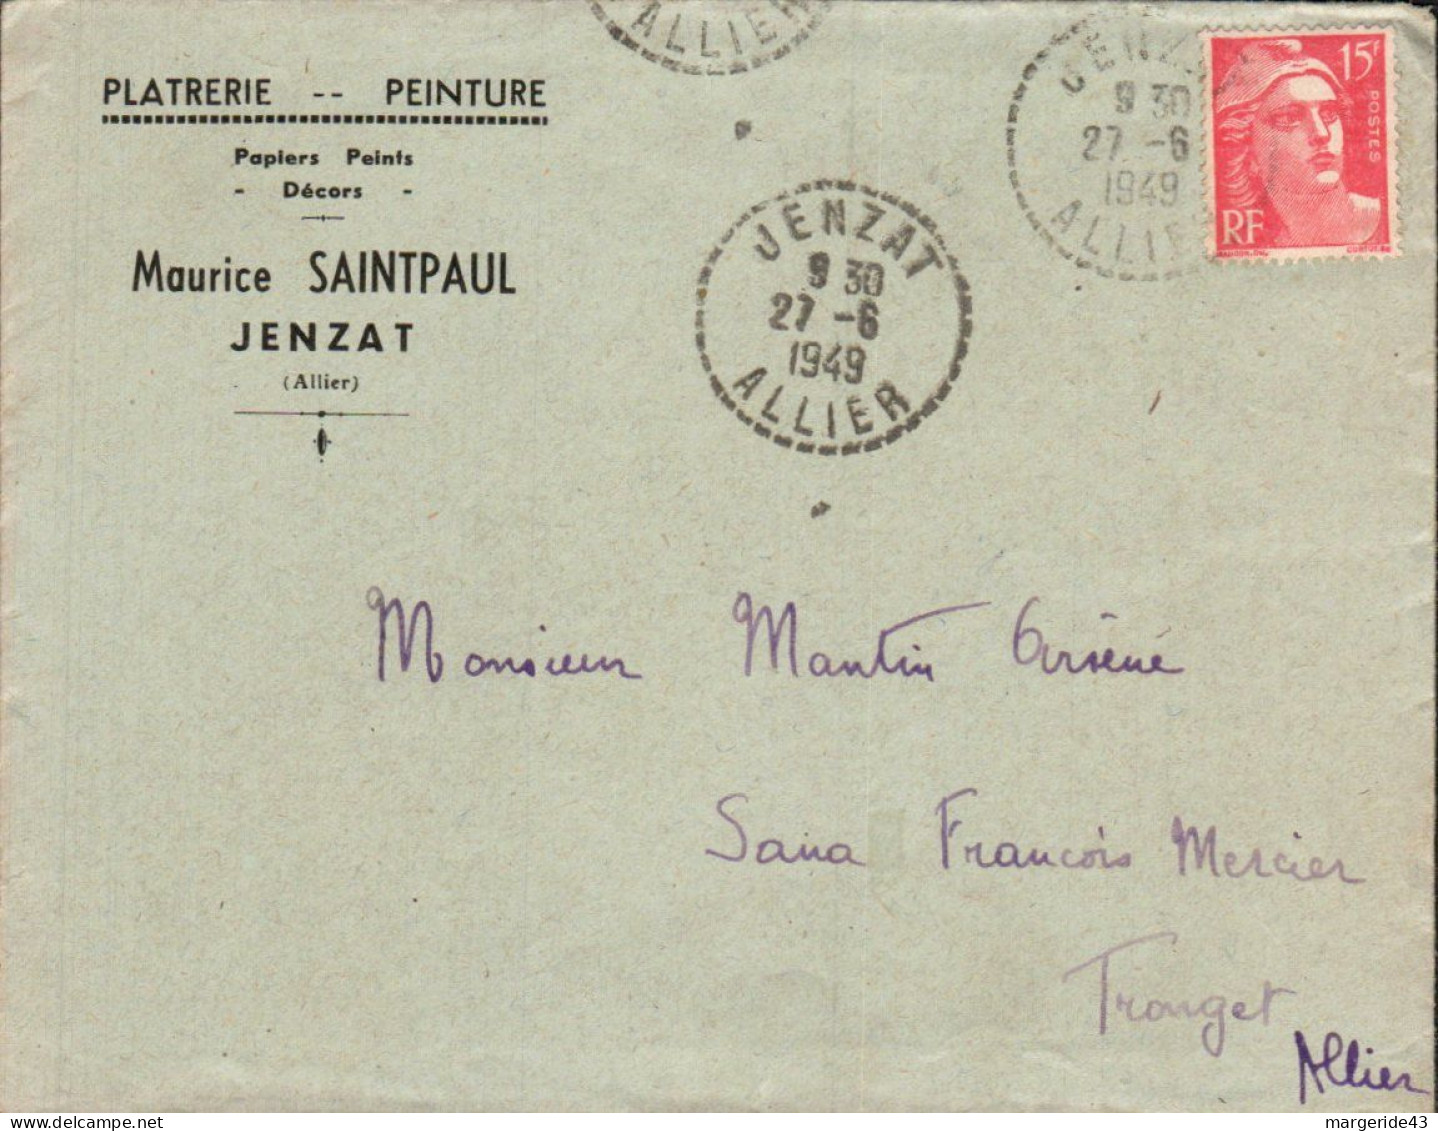 GANDON SUR LETTRE A EN TETE DE JENZAT 1949 - Postal Rates